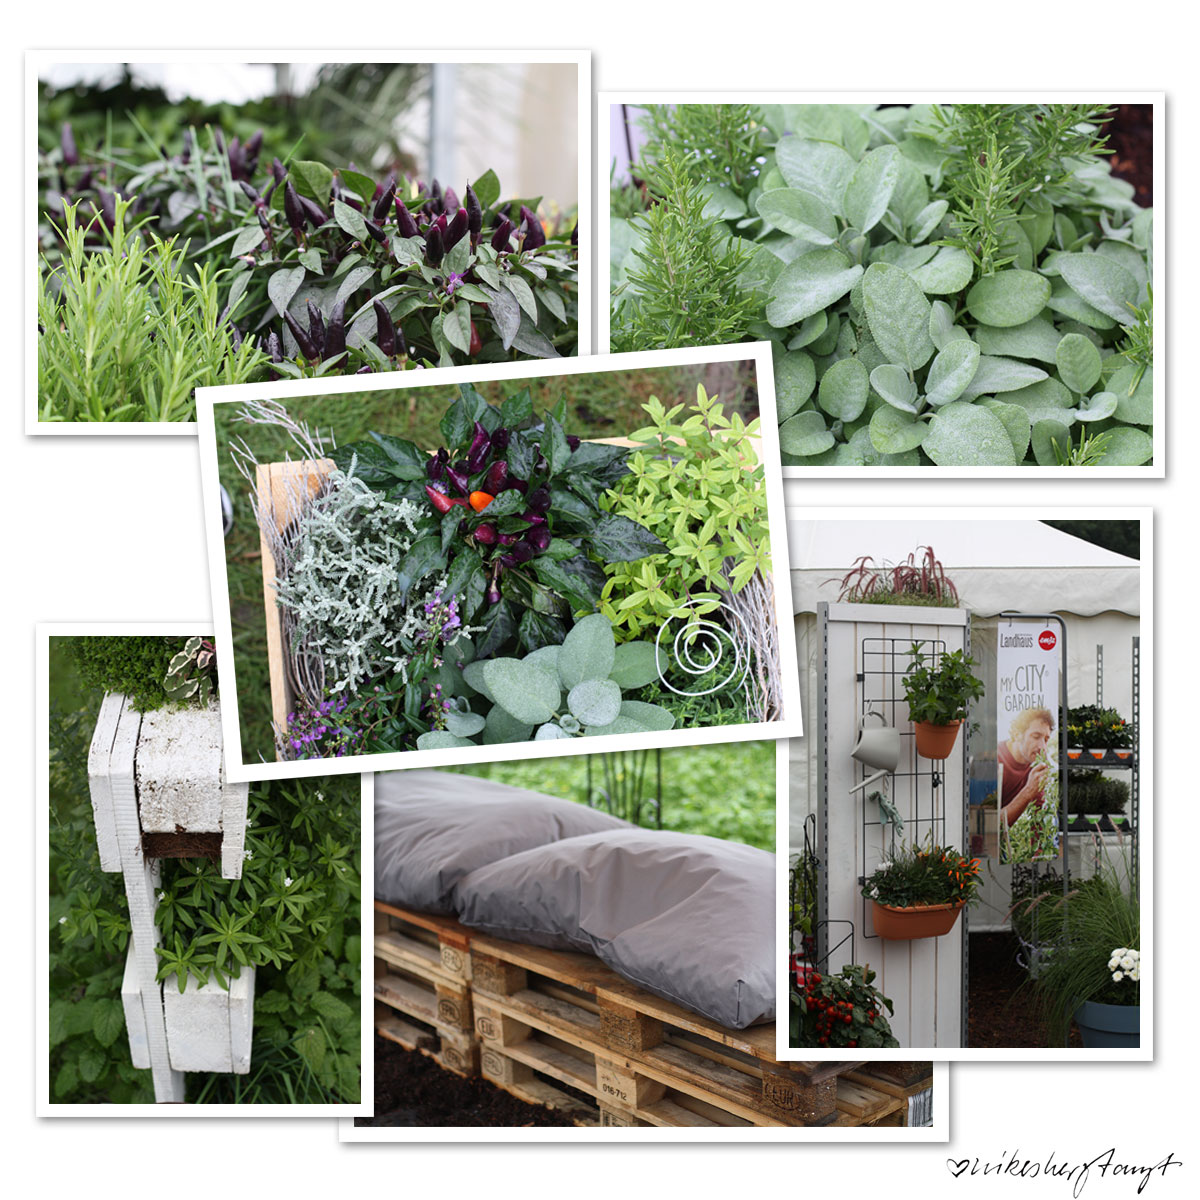 volmary, münster, garten-blogger-treffen, plant happy, pflanzen, gardening, nikesherztanzt, blog